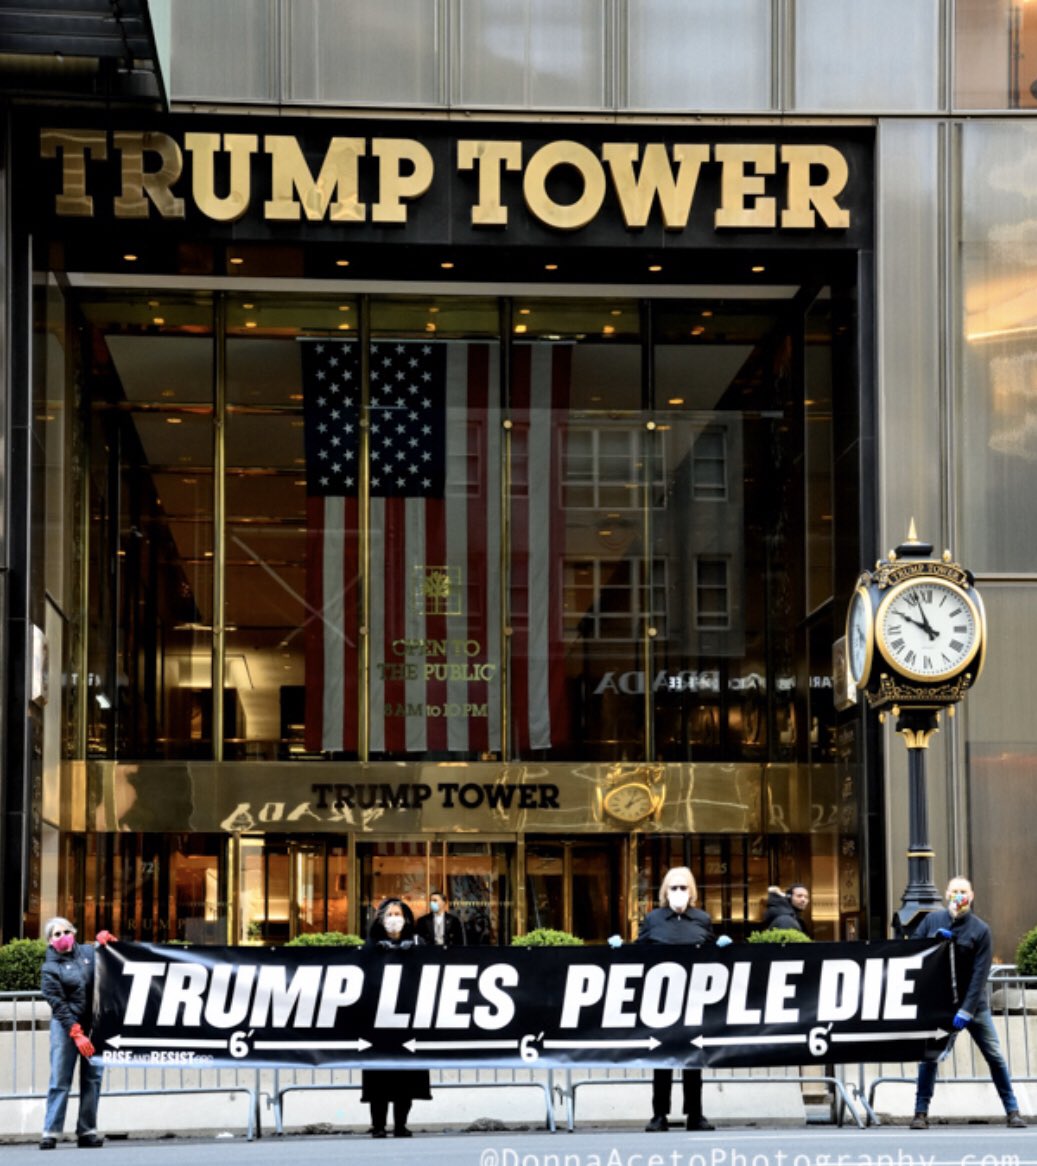 Trump lies and people die